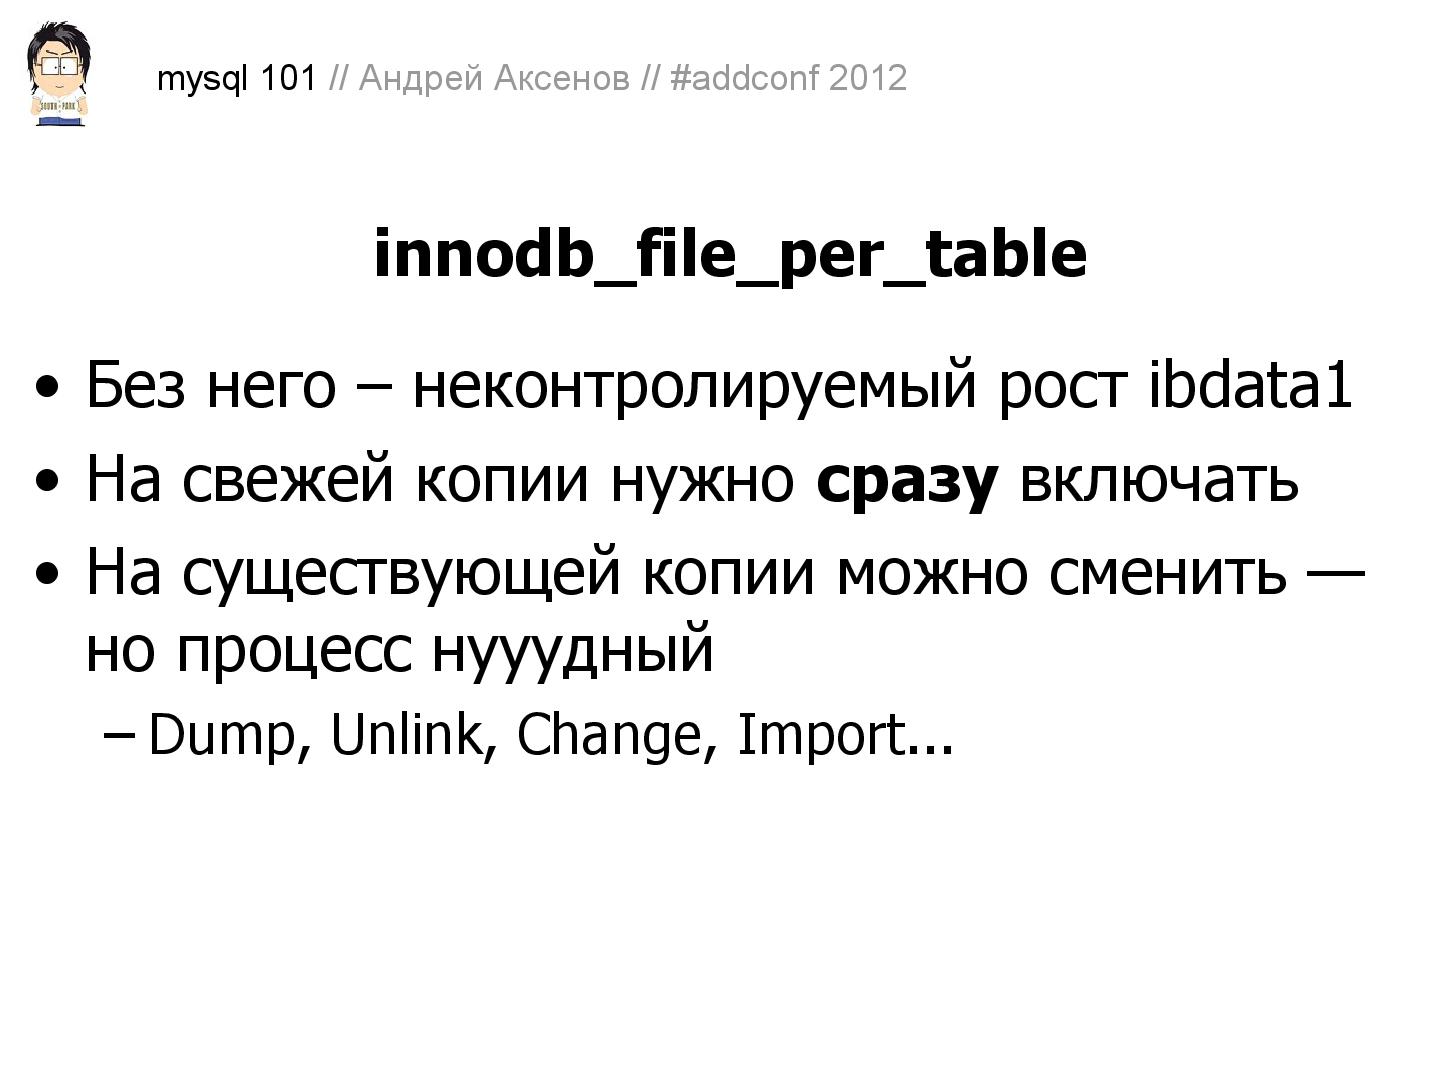 Файл:Как готовить MySQL (Андрей Аксенов, ADD-2012).pdf